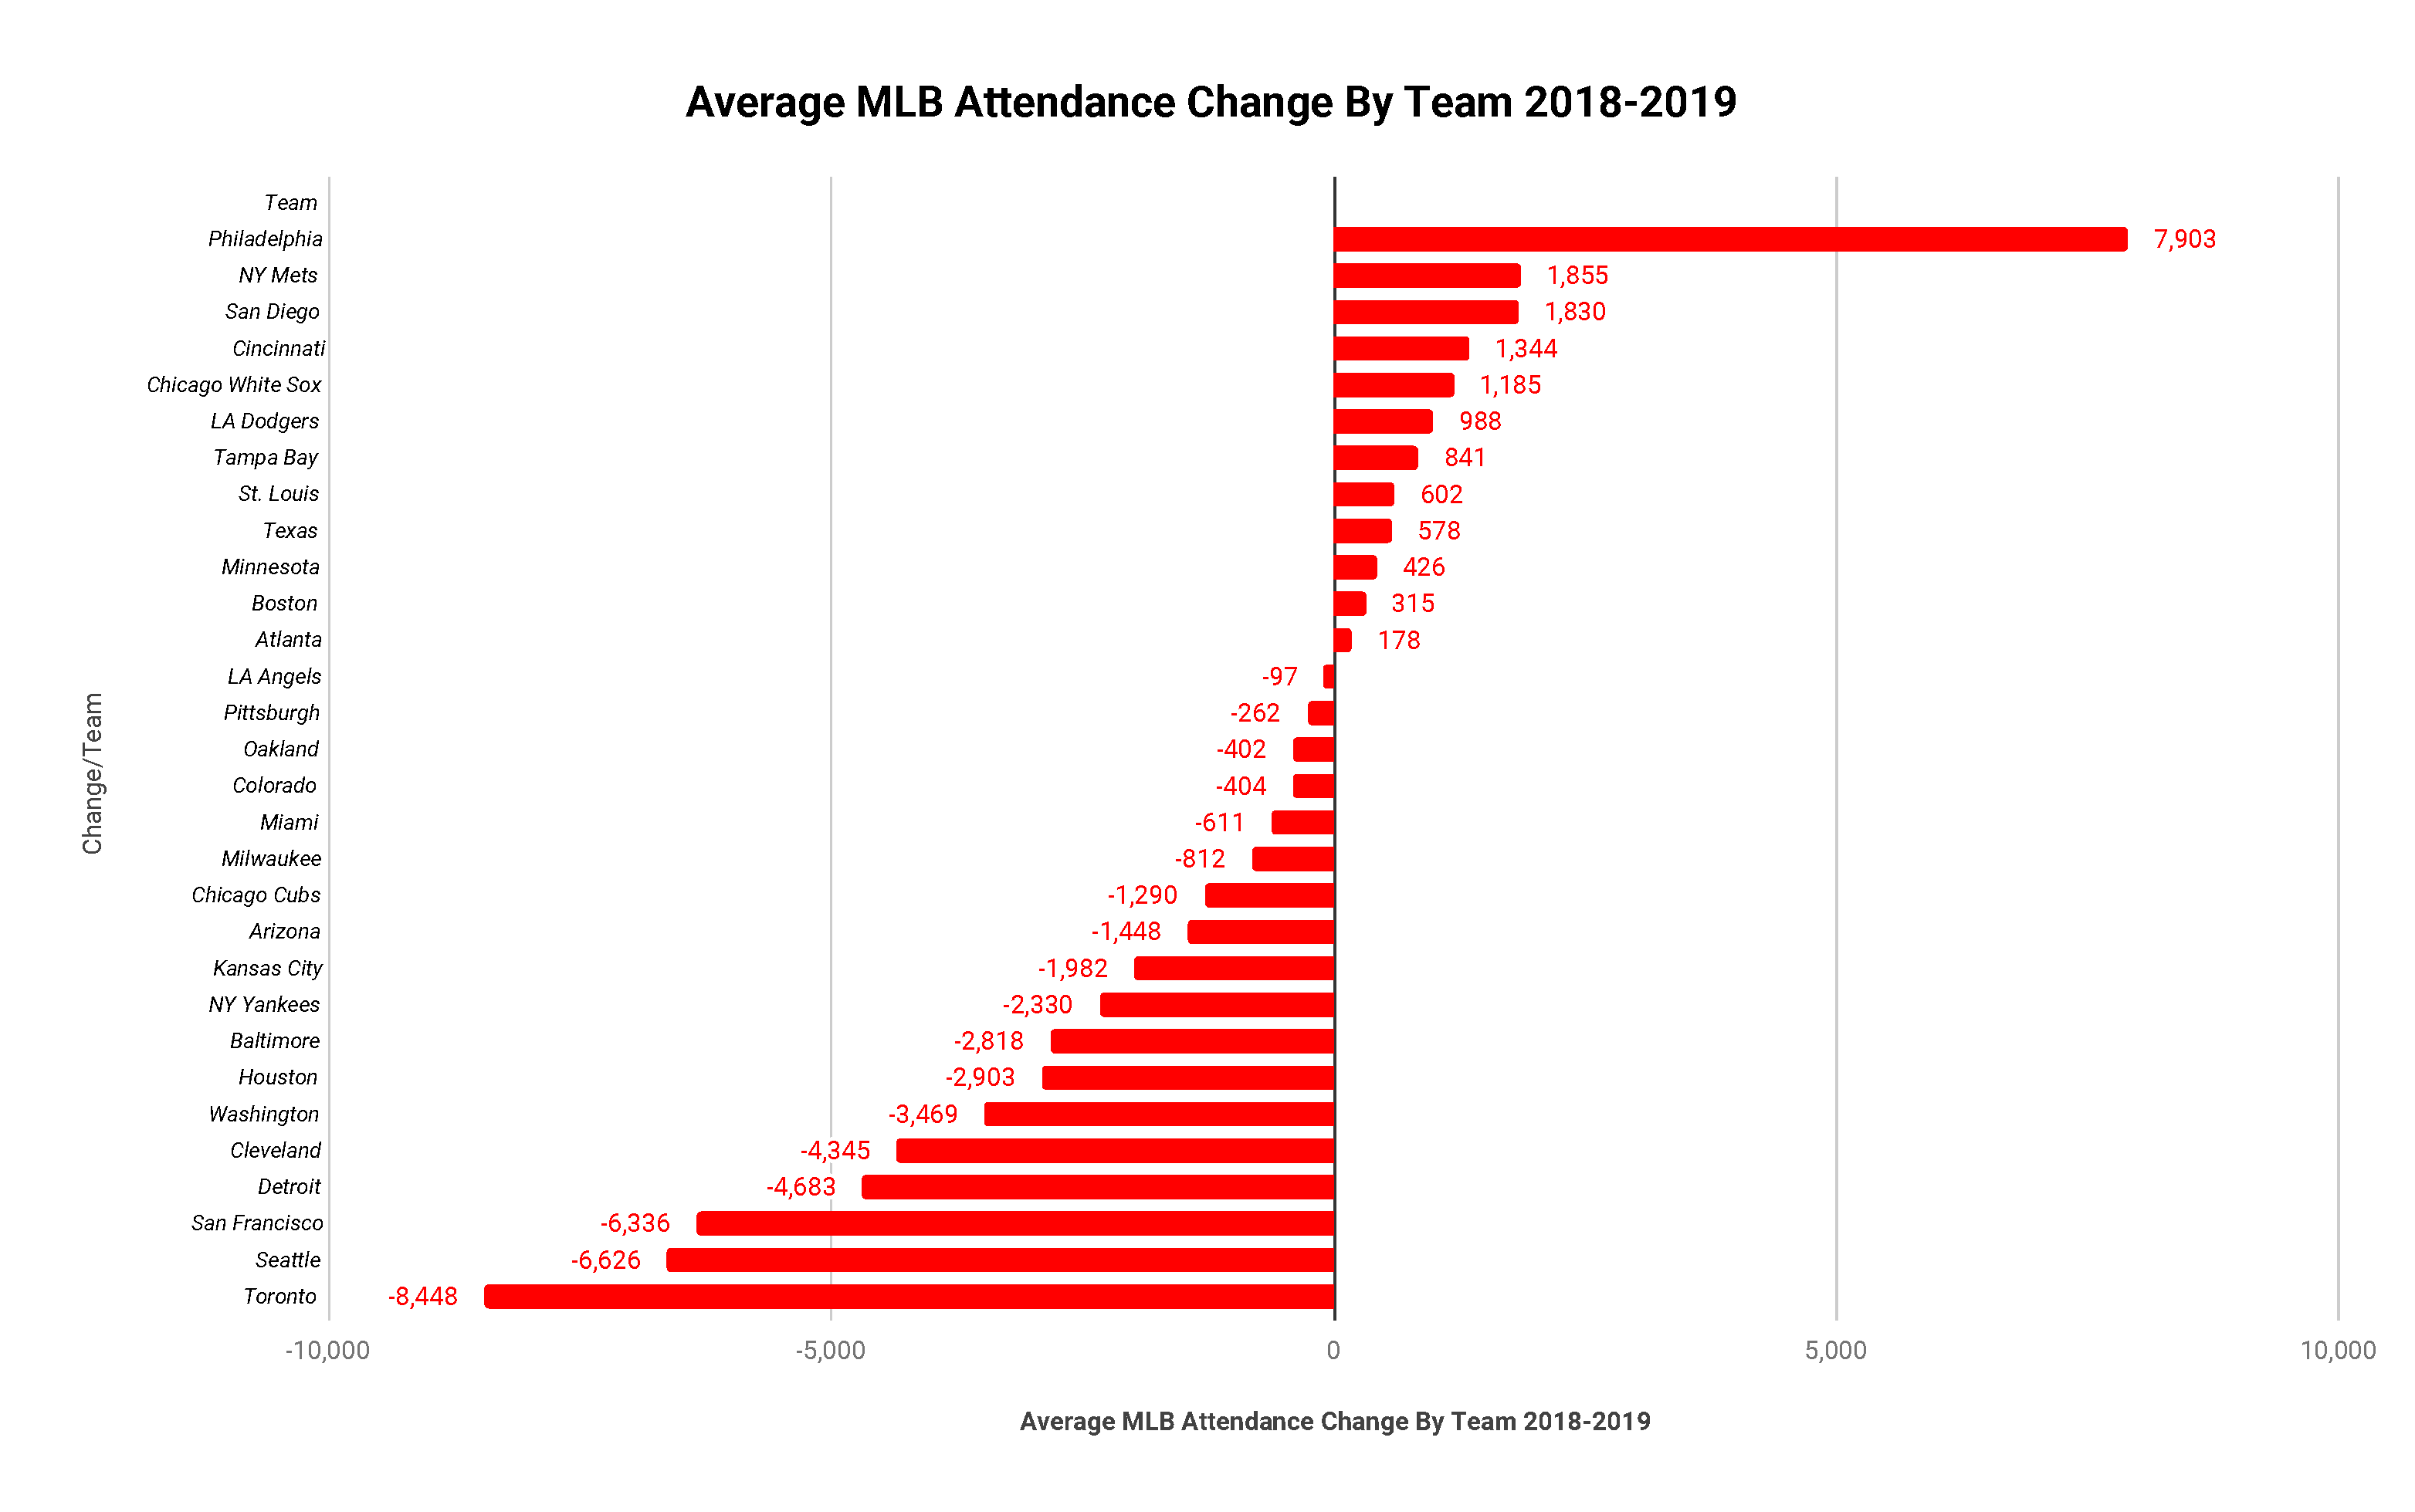 Average Attendance Change by Team